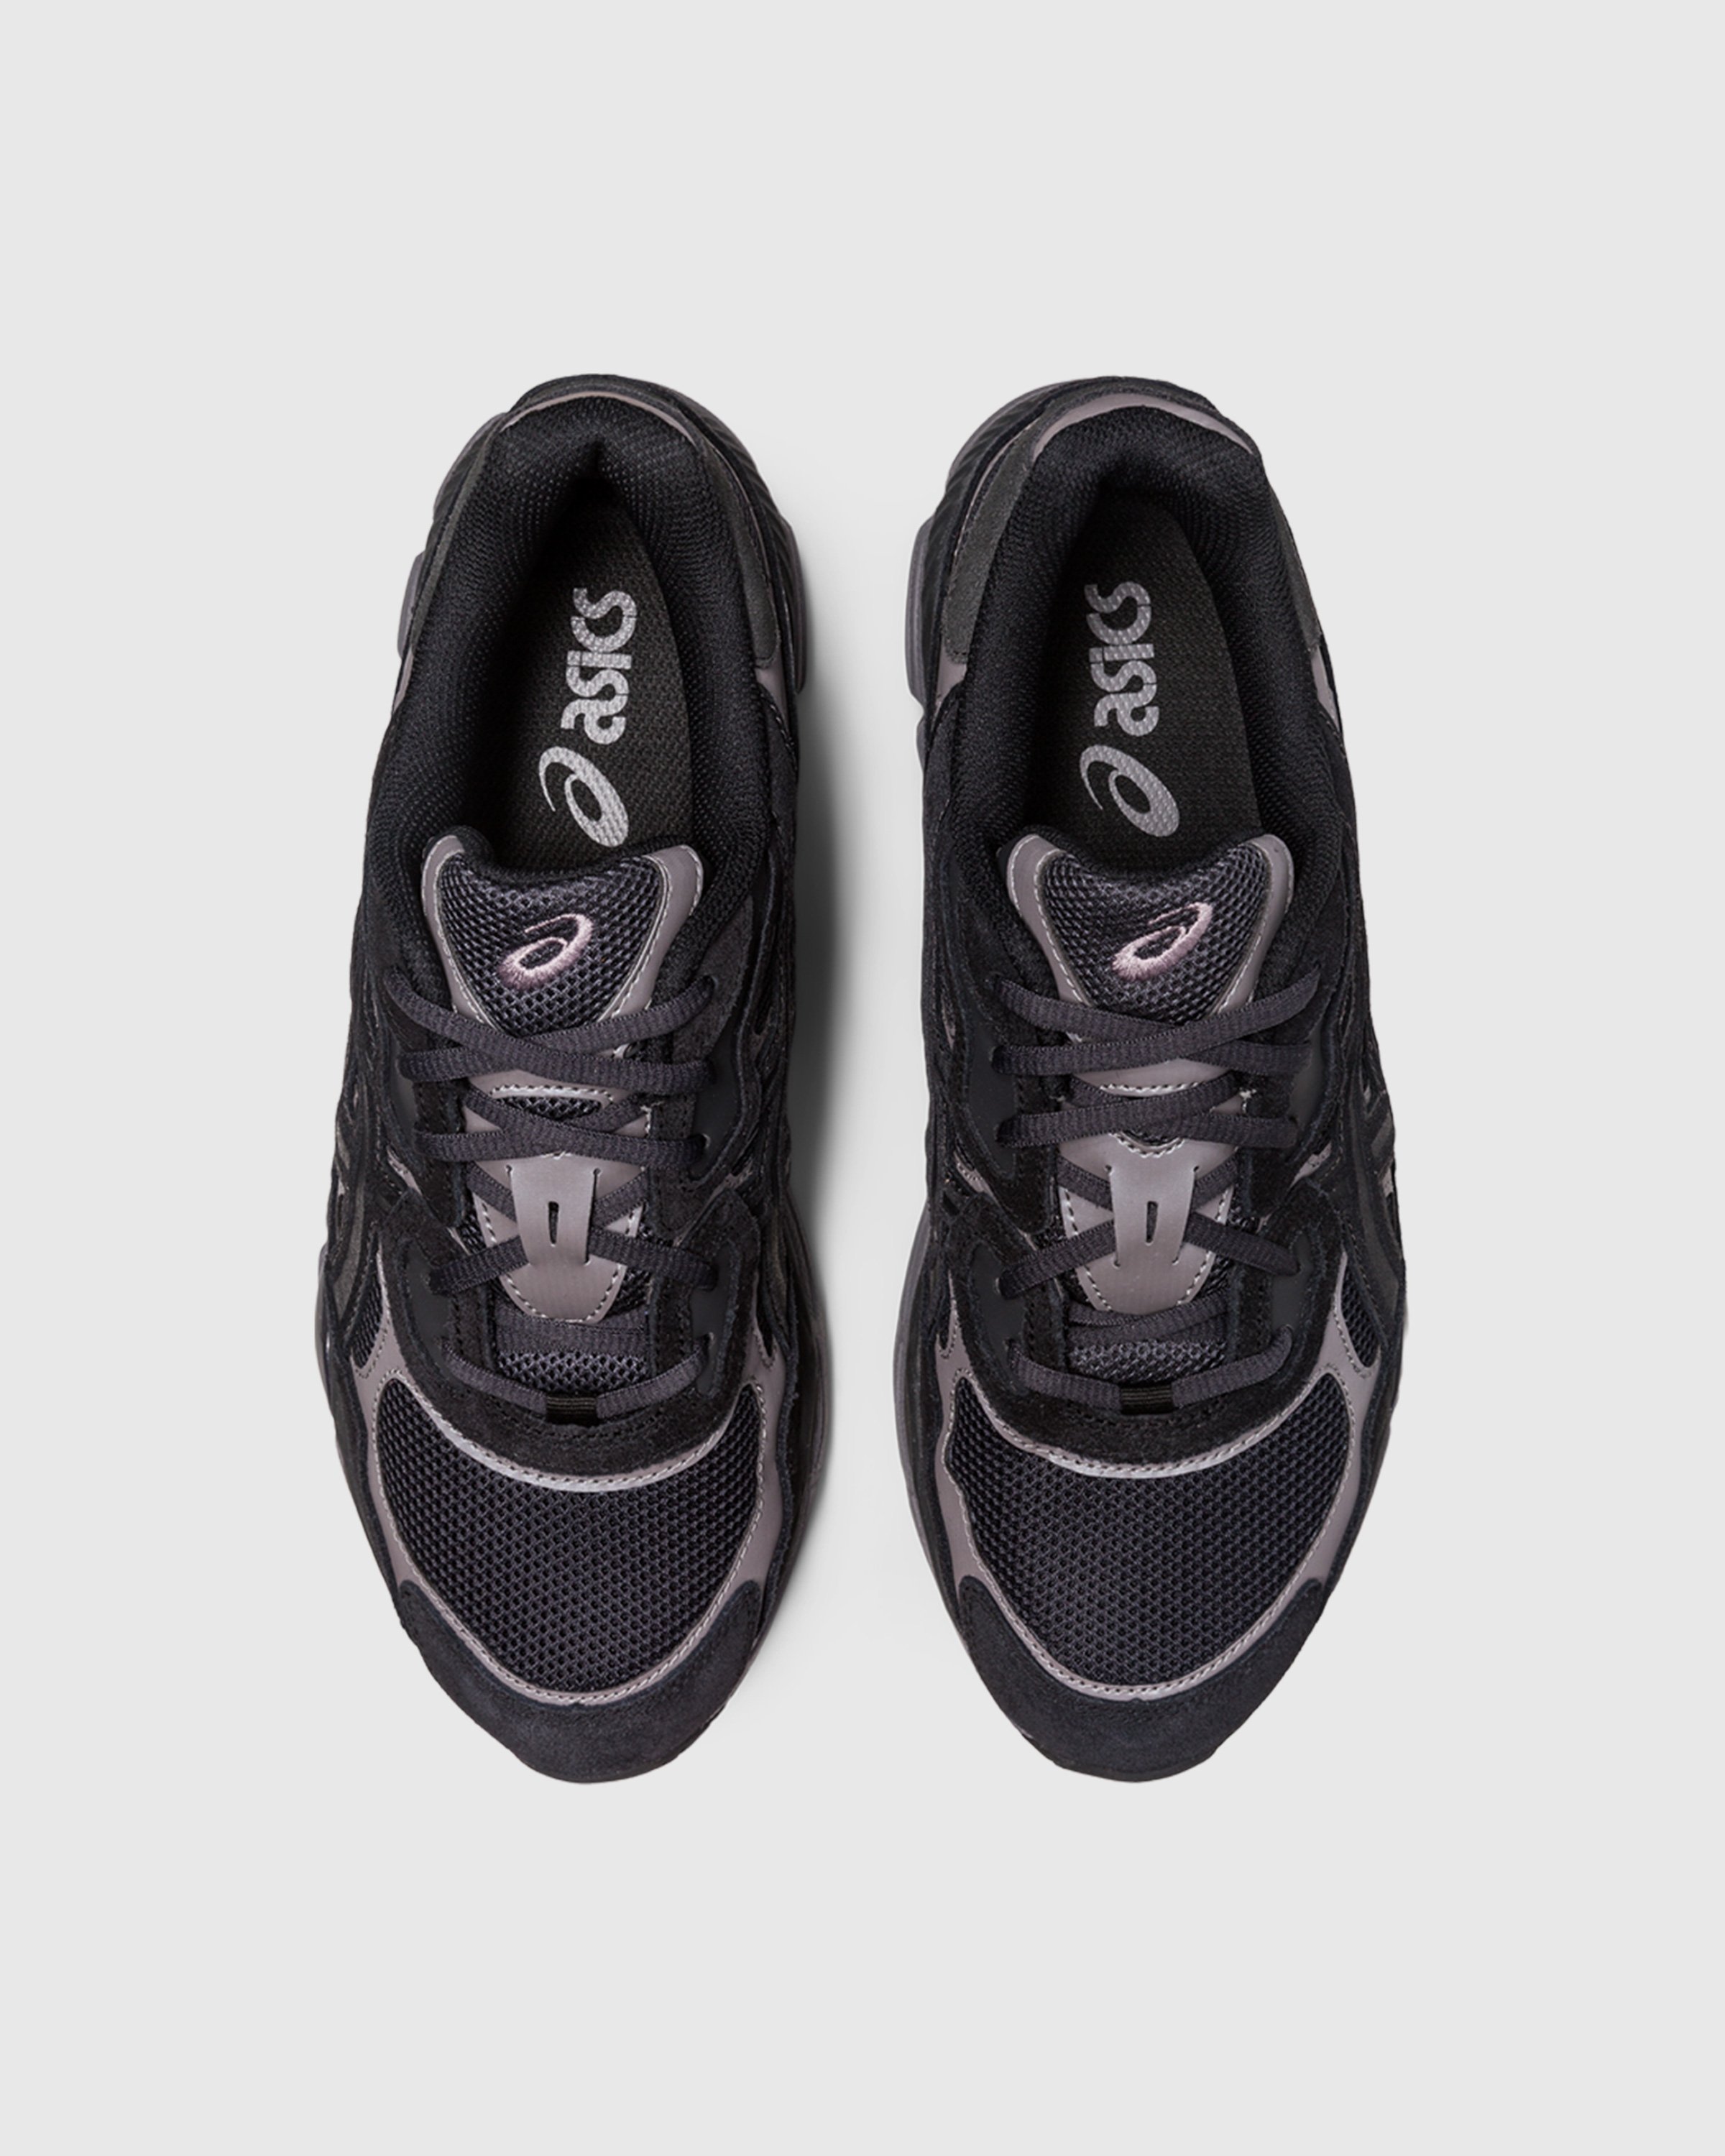 asics - GEL-NYC Graphite Grey/Black - Footwear - Black - Image 5